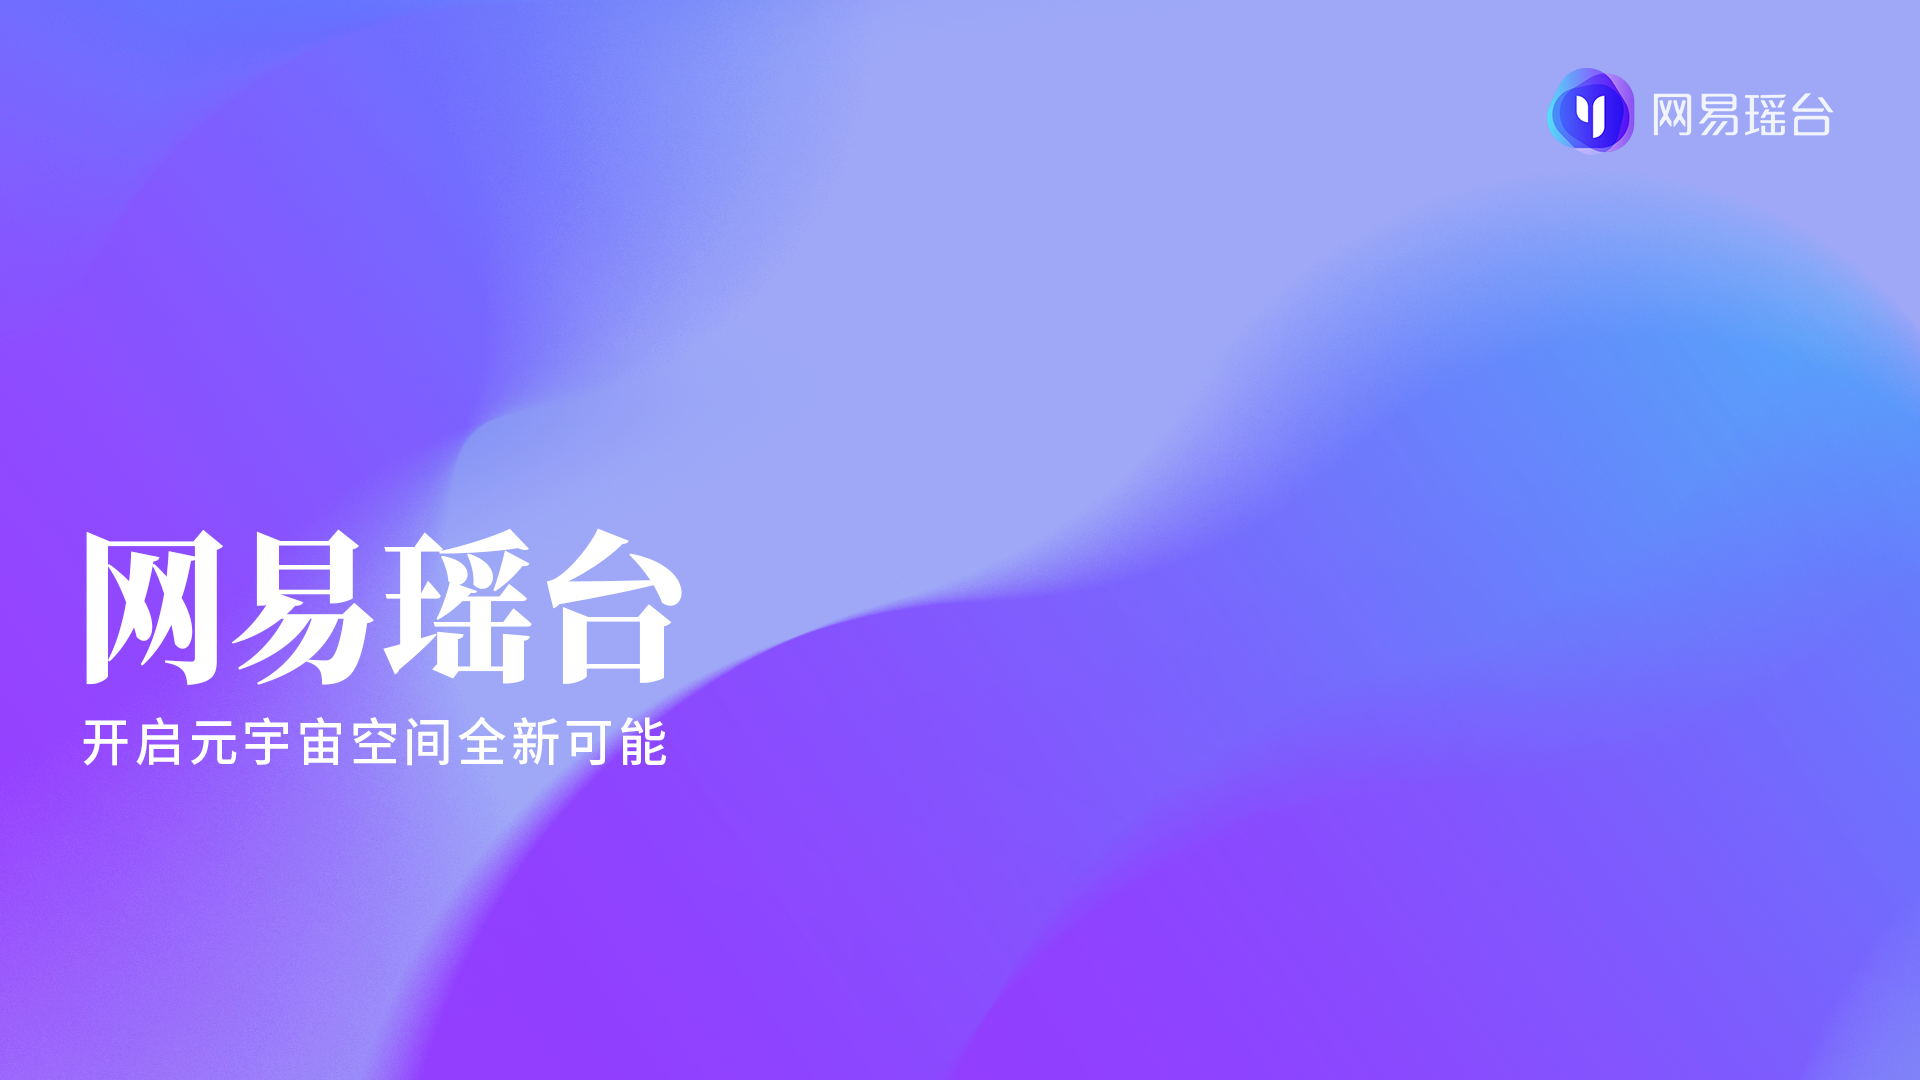 这张图片是一个紫色渐变的平面背景，上面有白色中文文字“网易云音乐”和“用音乐连接你我”以及网易云音乐的标志。